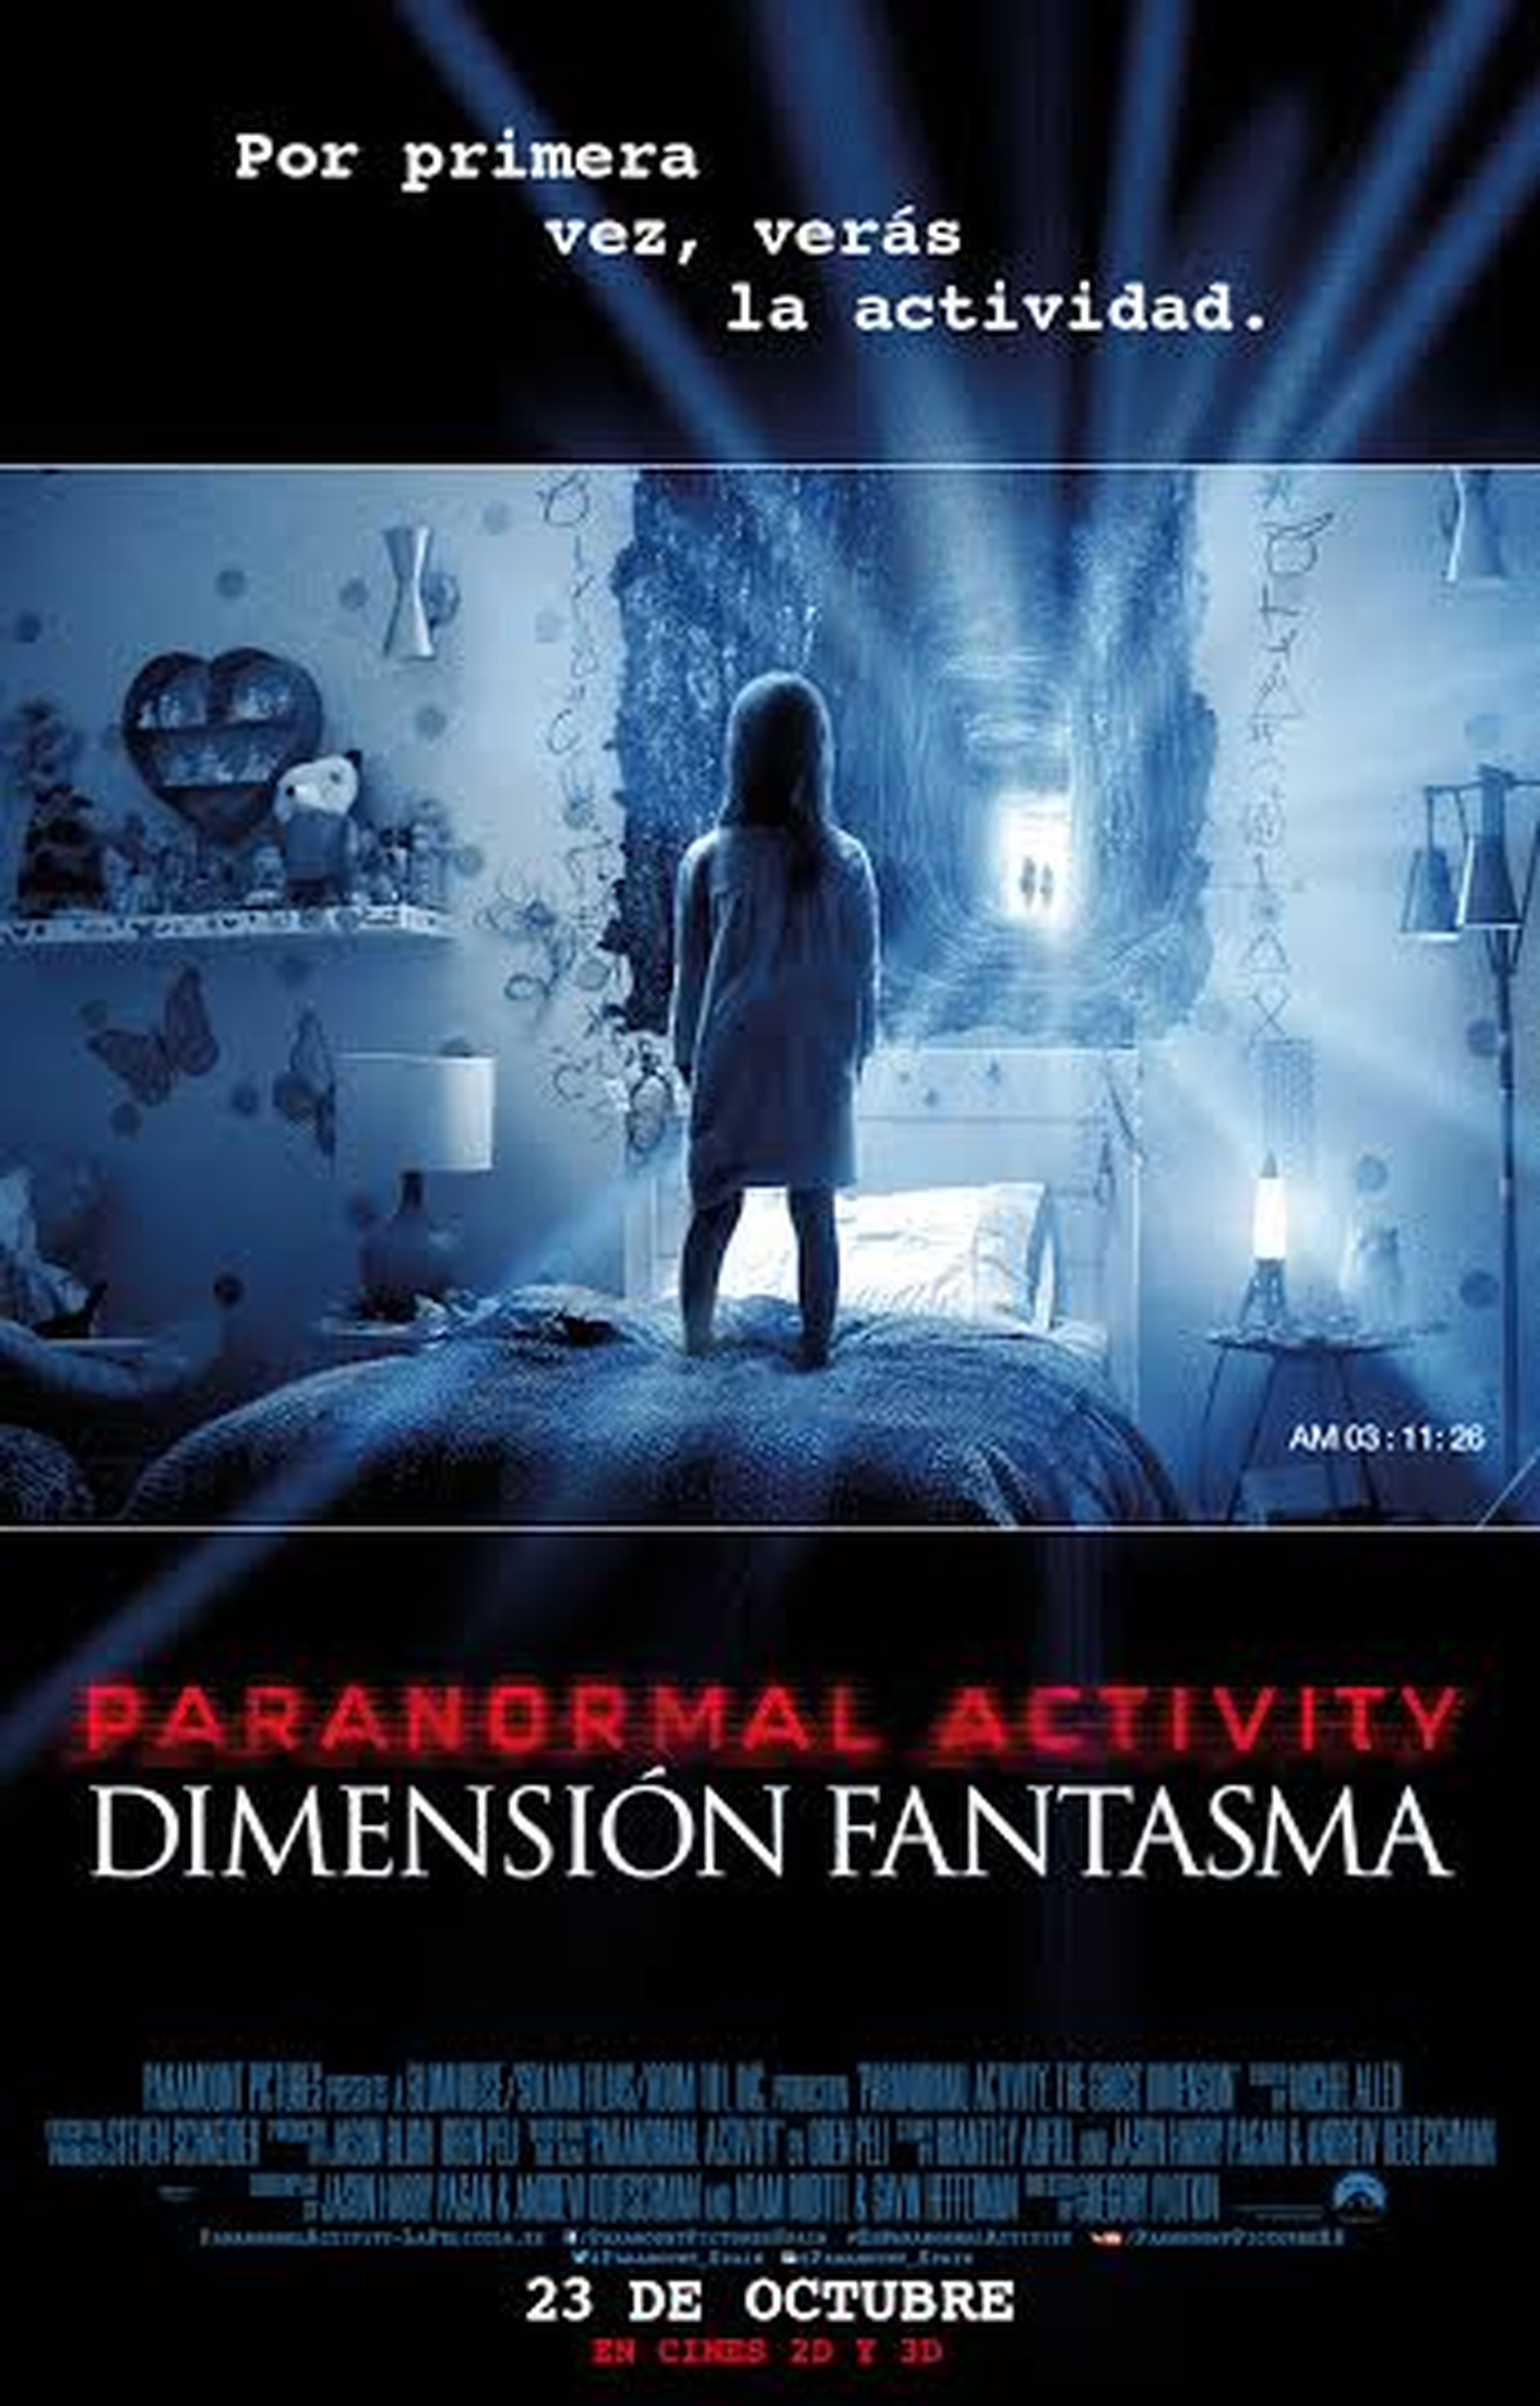 Paranormal Activity: dimensión fantasma: clip de la cinta de terror